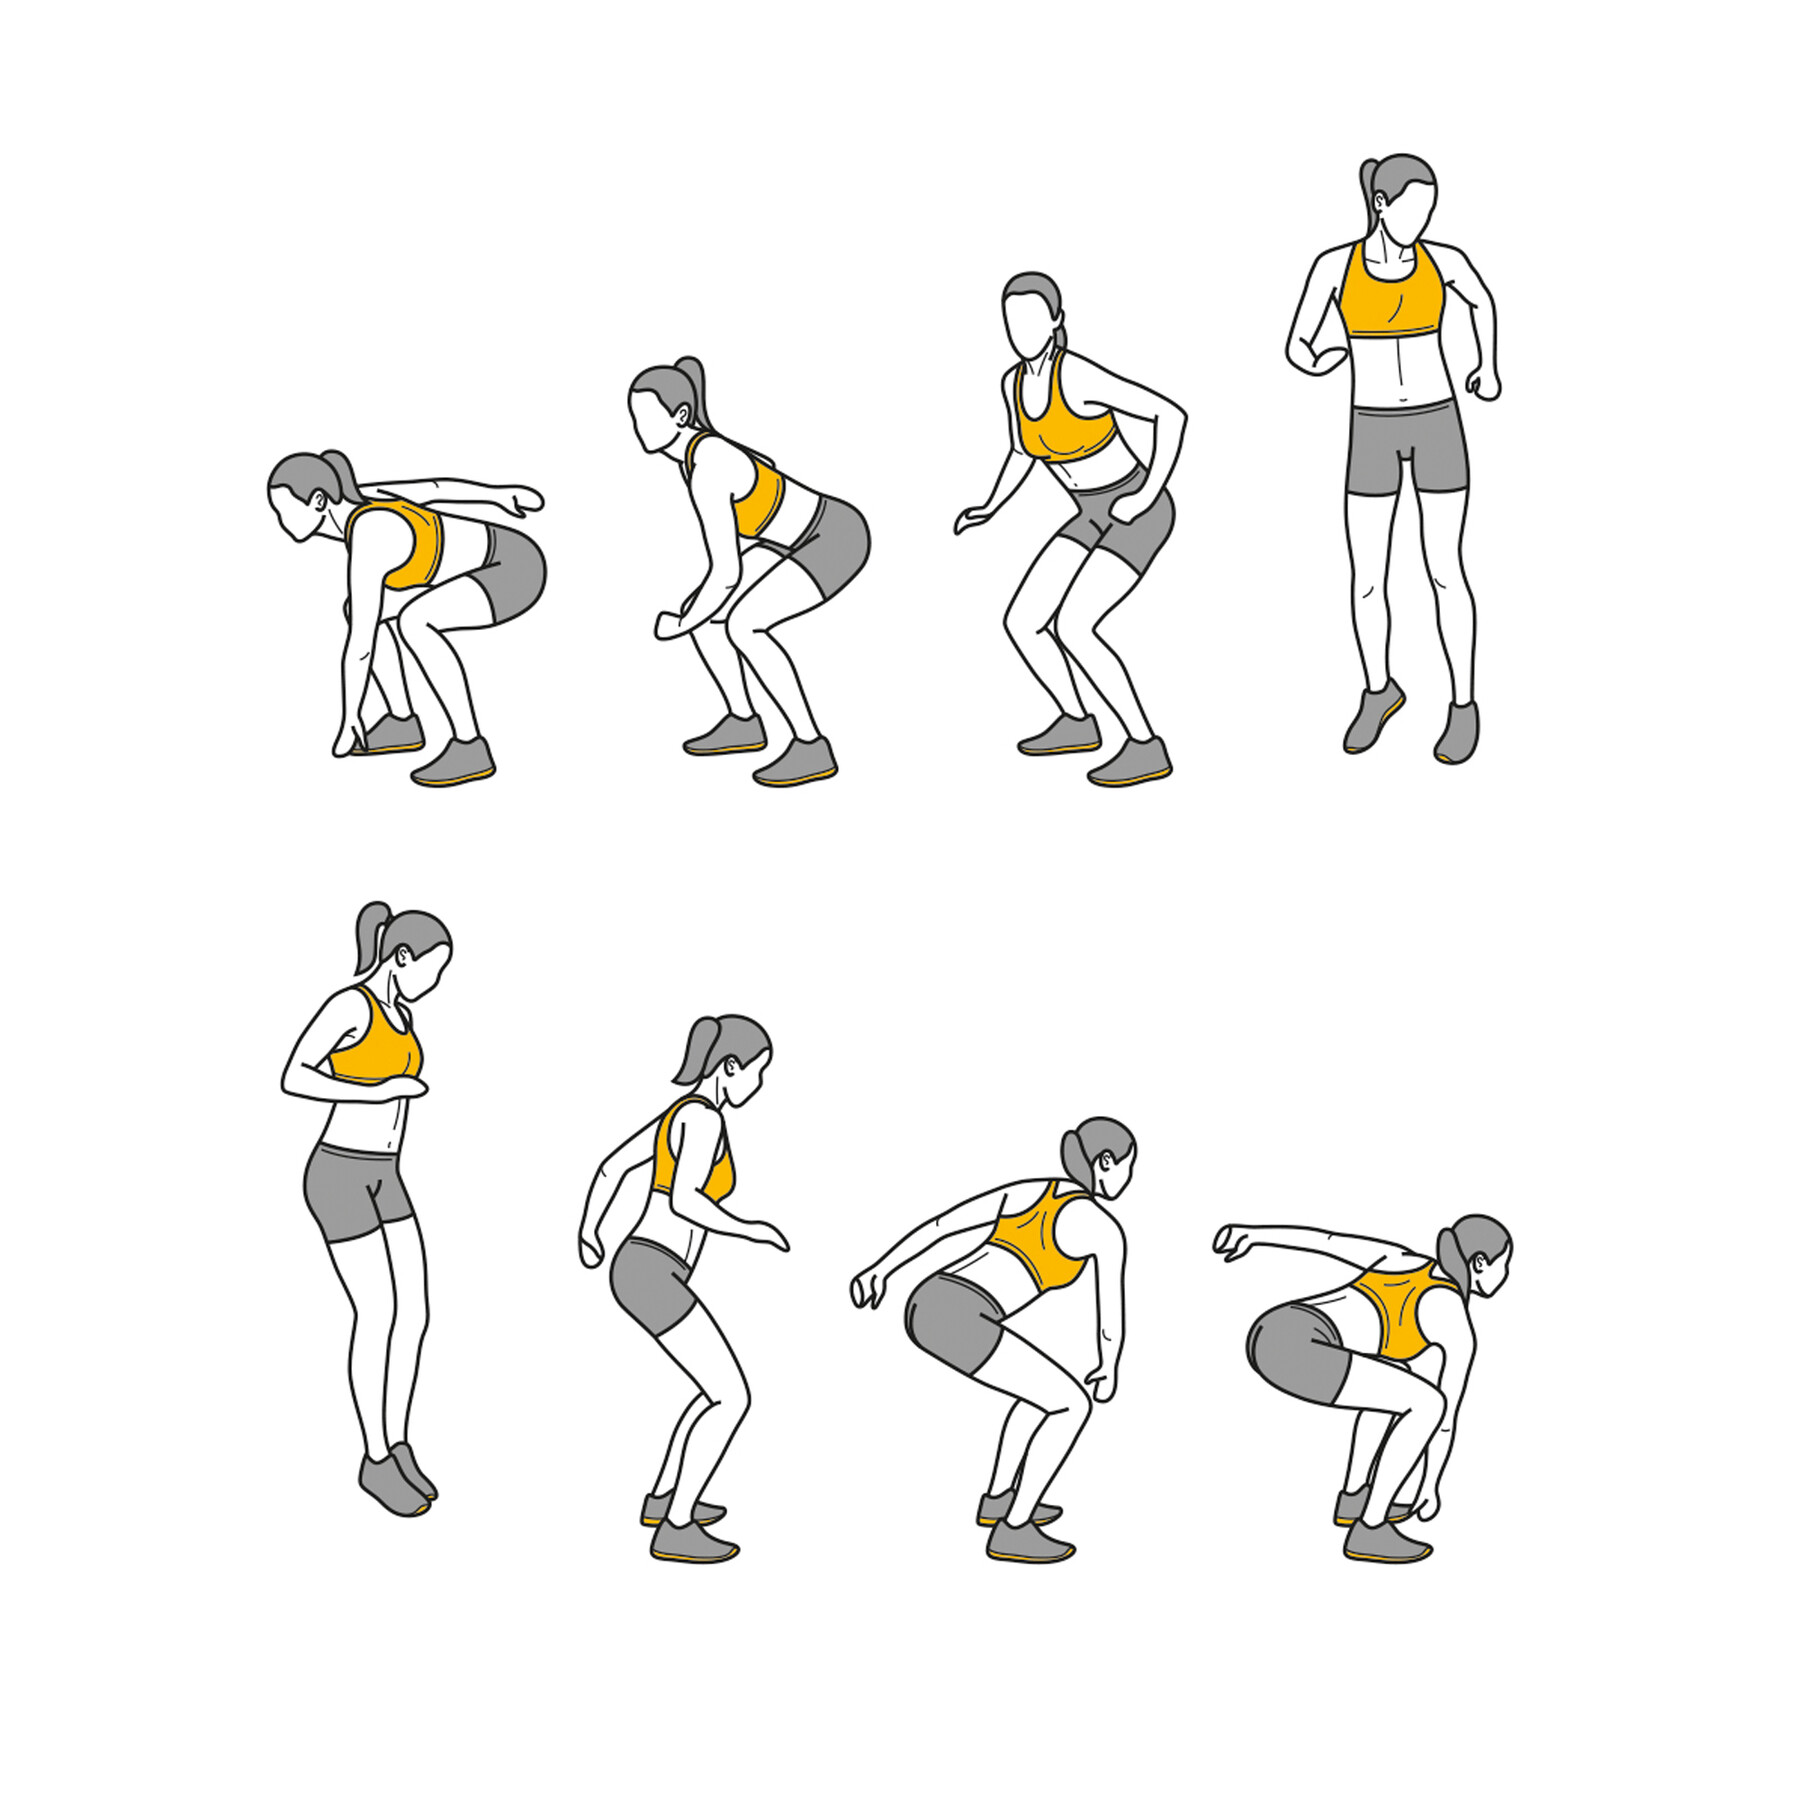 ArtStation - Leg-Pull-In female exercise fitness illustrated GIF line  animation illustration